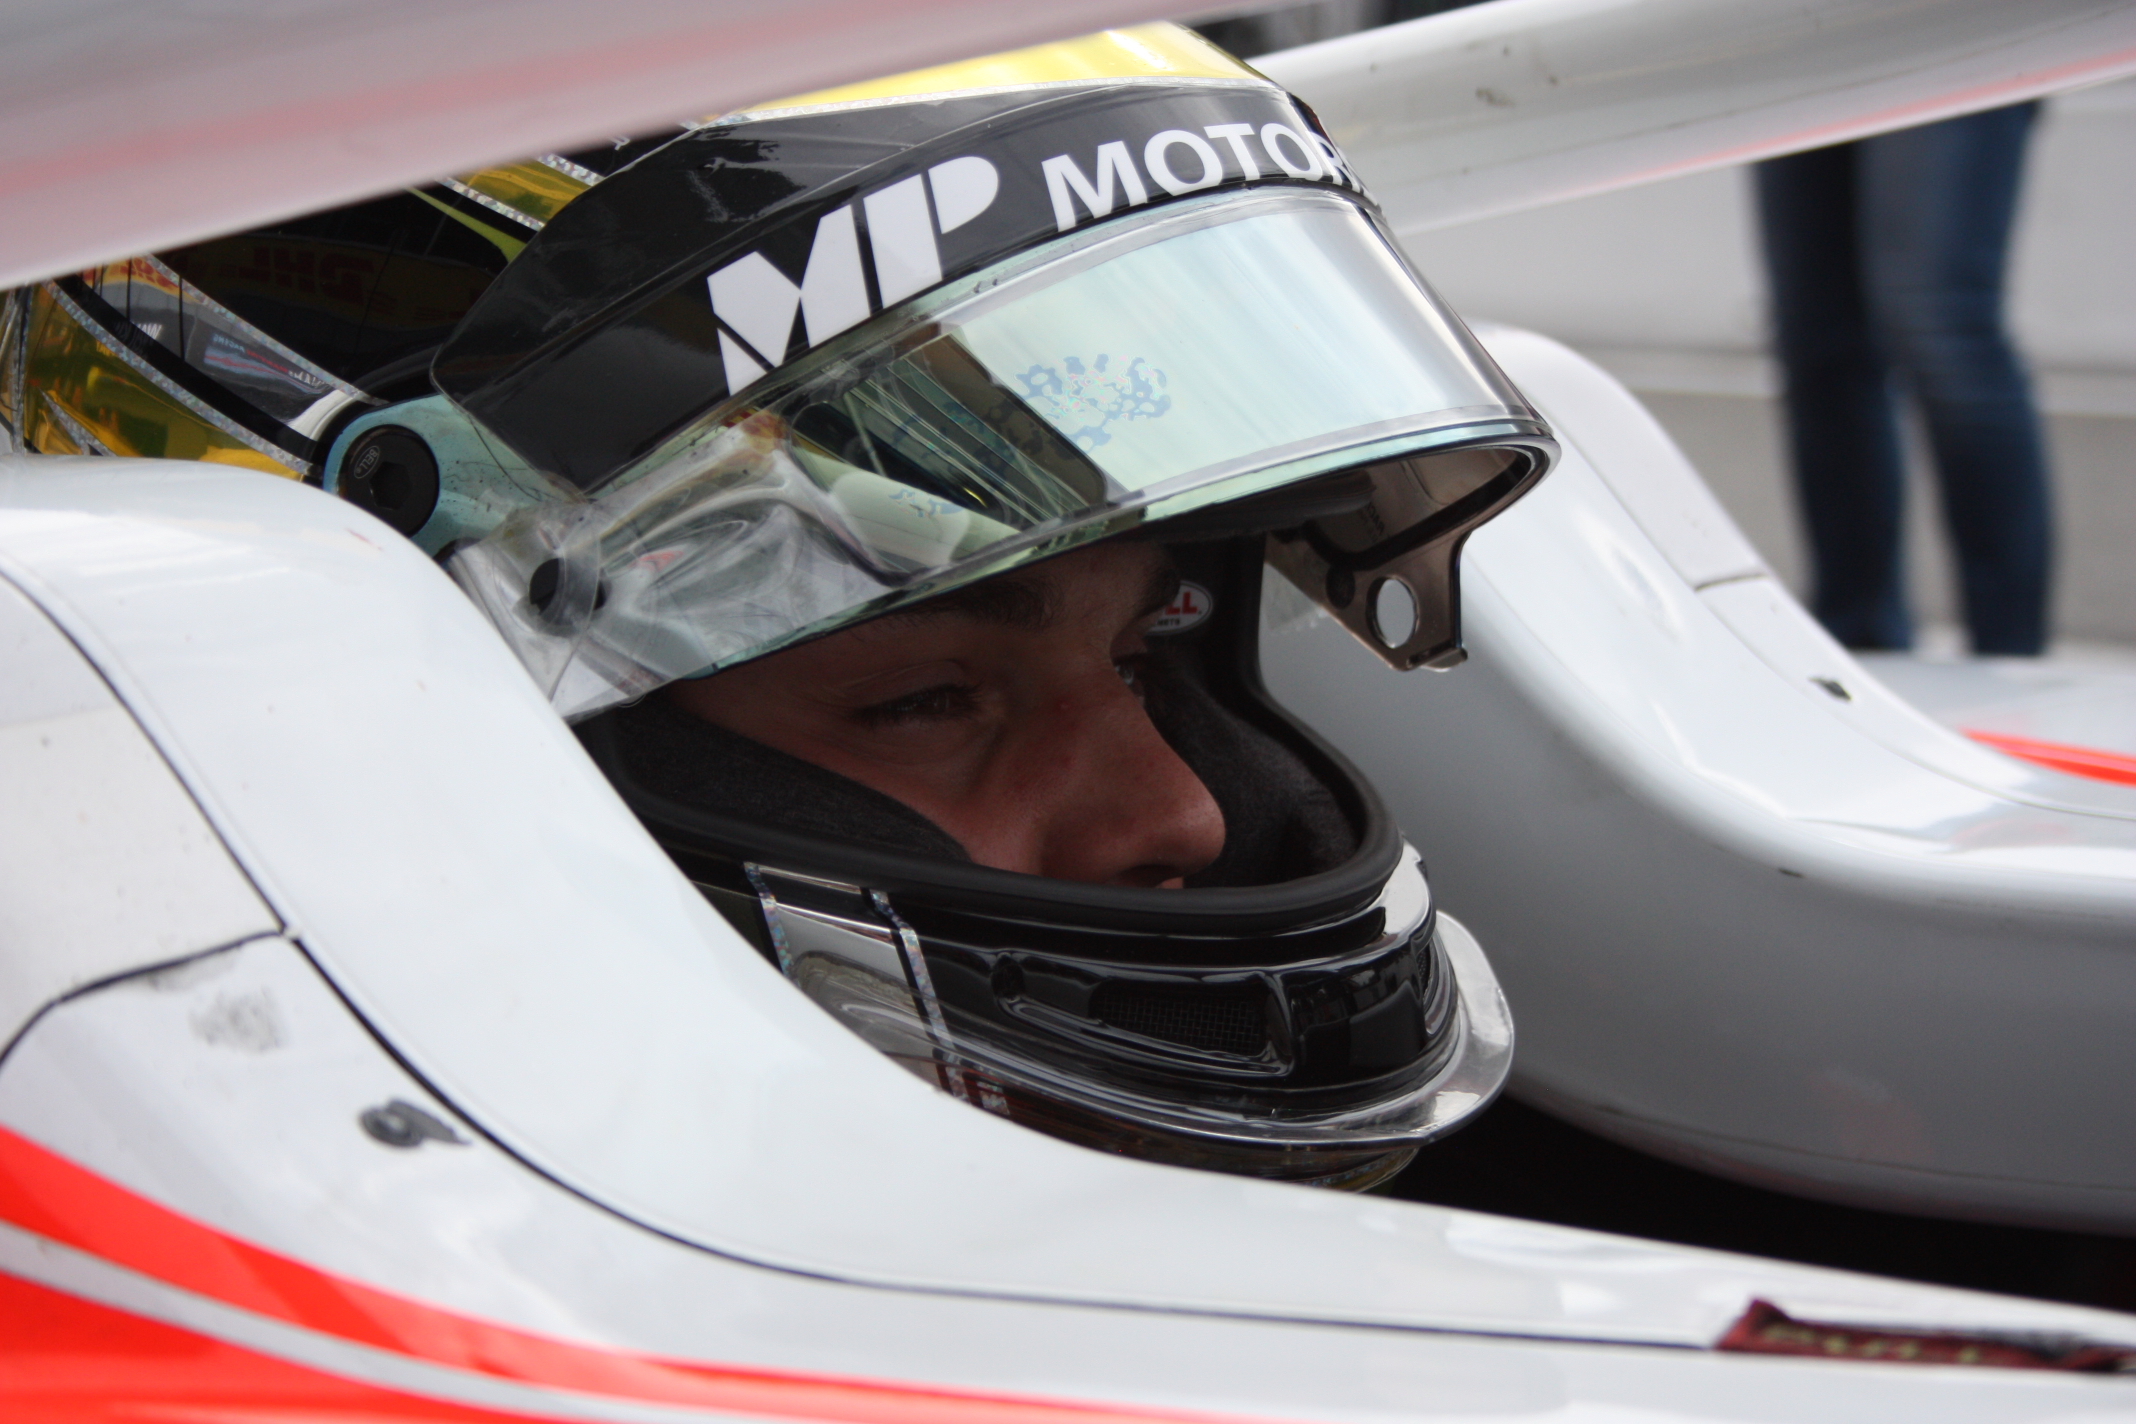 Dobrý víkend měl bývalý jezdec GP3, Dorian Boccolacci: V neděli dojel 7. a poprvé bodoval